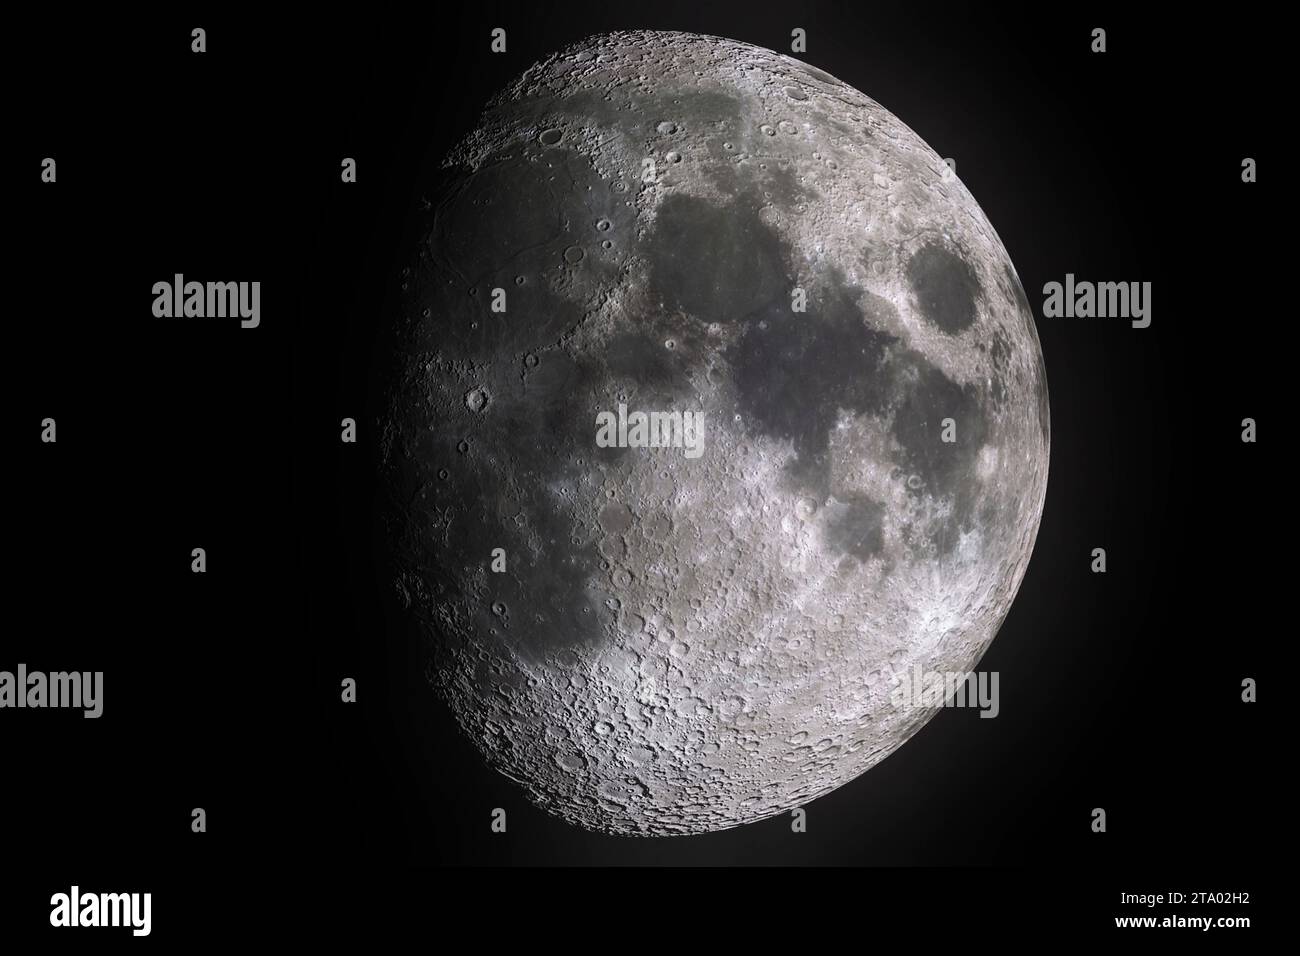 fasi lunari con ombra chiara della superficie lunare con cratere su sfondo nero, concetto di universo e scienza Foto Stock